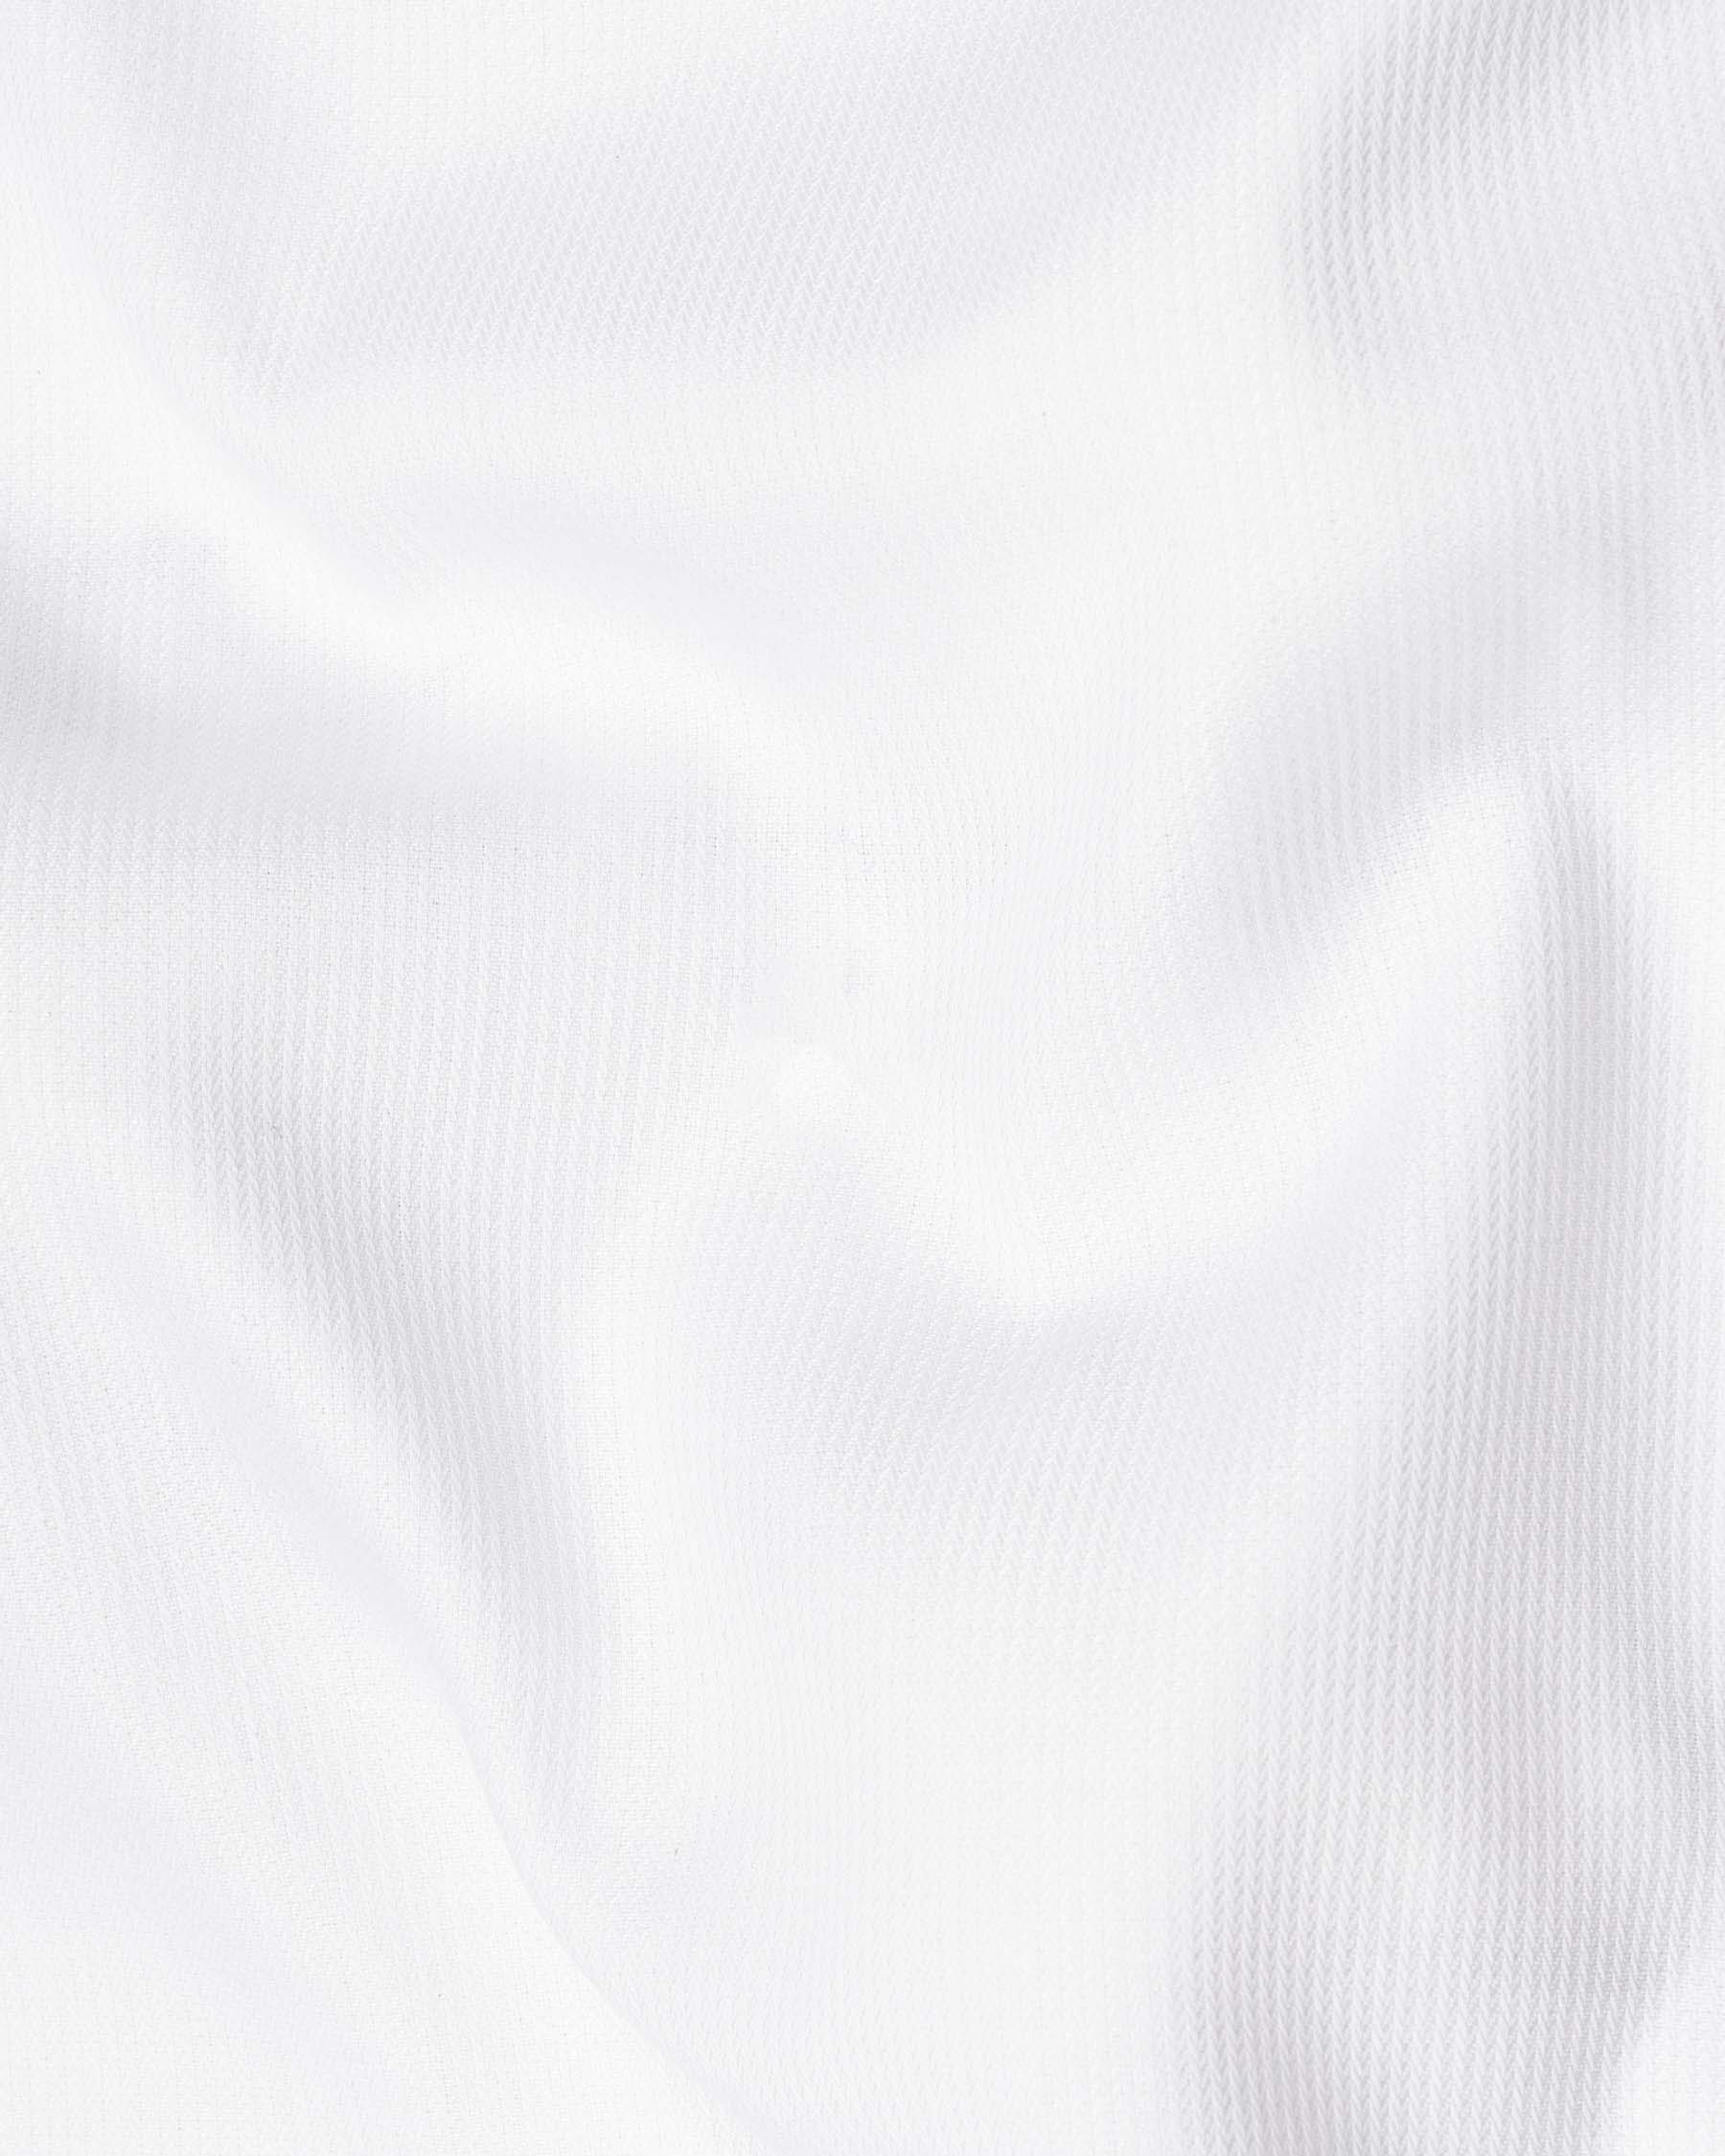 Snow White Luxurious Pin Striped Premium Cotton Shirt 6228-BD-BLK-38, 6228-BD-BLK-H-38, 6228-BD-BLK-39, 6228-BD-BLK-H-39, 6228-BD-BLK-40, 6228-BD-BLK-H-40, 6228-BD-BLK-42, 6228-BD-BLK-H-42, 6228-BD-BLK-44, 6228-BD-BLK-H-44, 6228-BD-BLK-46, 6228-BD-BLK-H-46, 6228-BD-BLK-48, 6228-BD-BLK-H-48, 6228-BD-BLK-50, 6228-BD-BLK-H-50, 6228-BD-BLK-52, 6228-BD-BLK-H-52